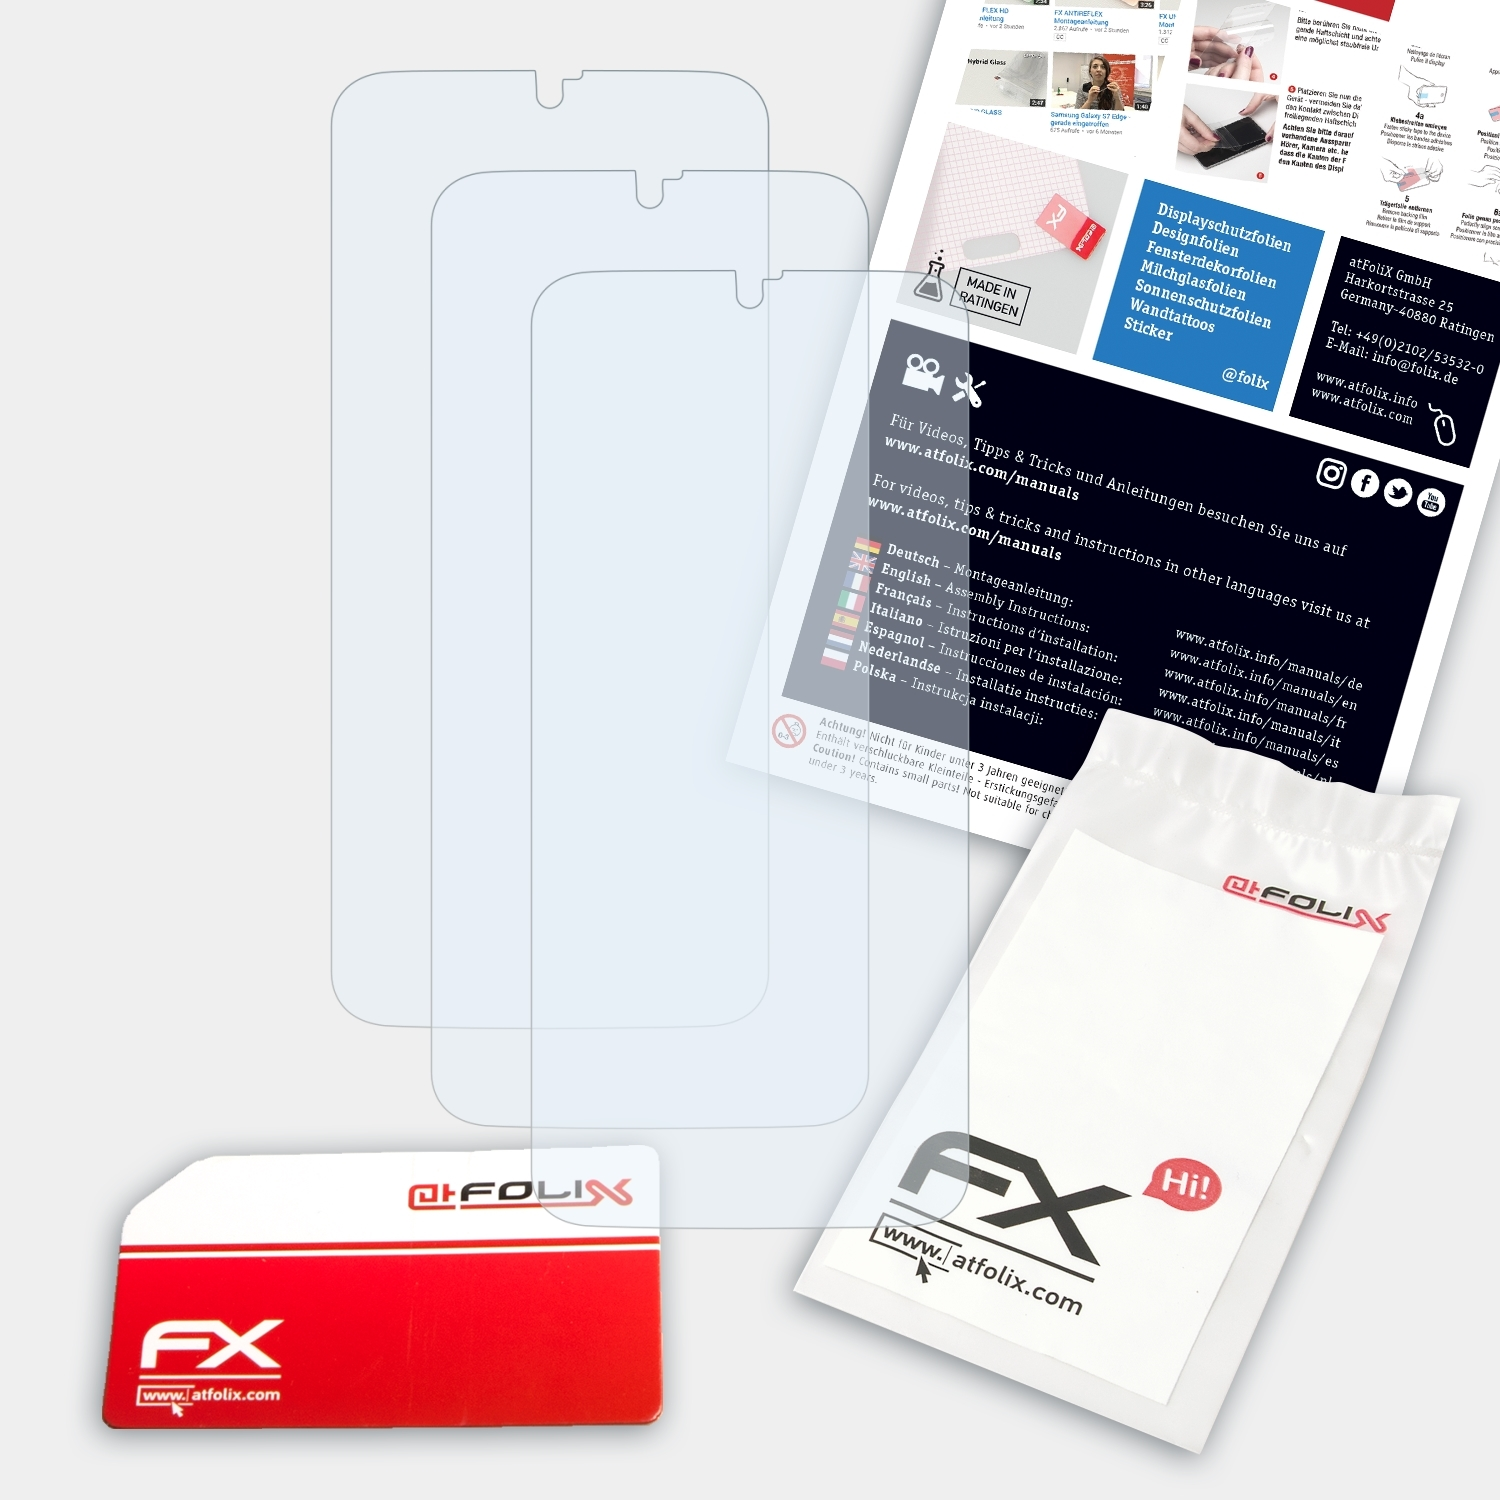 ATFOLIX 3x Revvlry+) Displayschutz(für FX-Clear T-Mobile